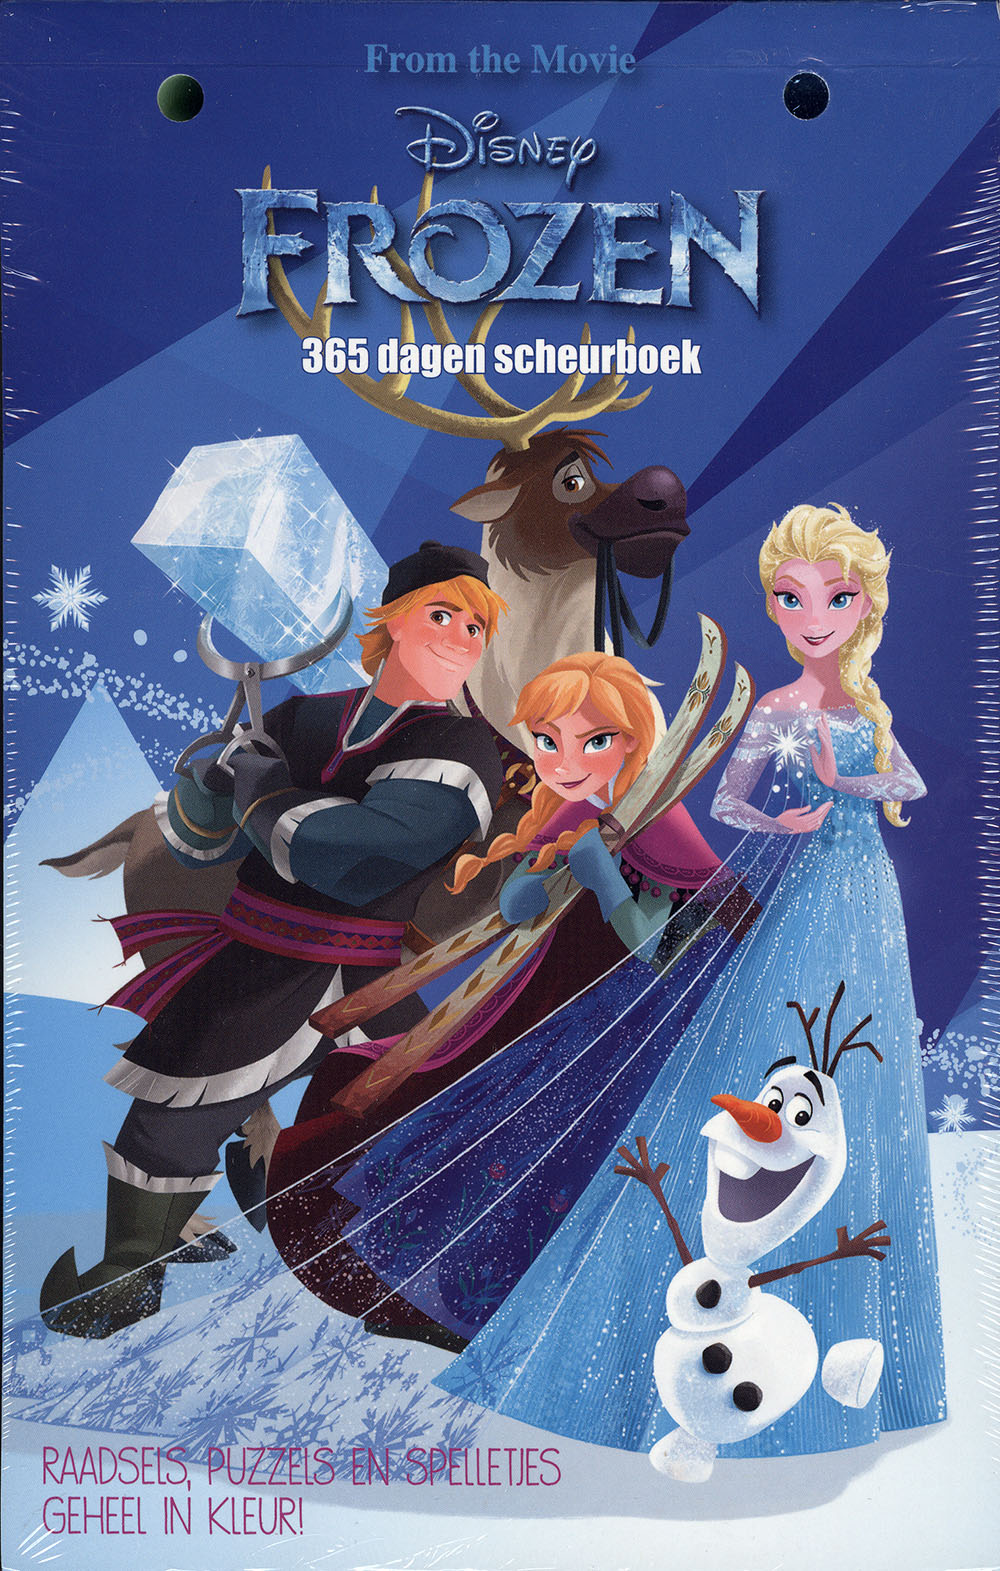 lotus Slang Getand Disney Frozen 365 dagen scheurboek - StripboekenHandel.nl